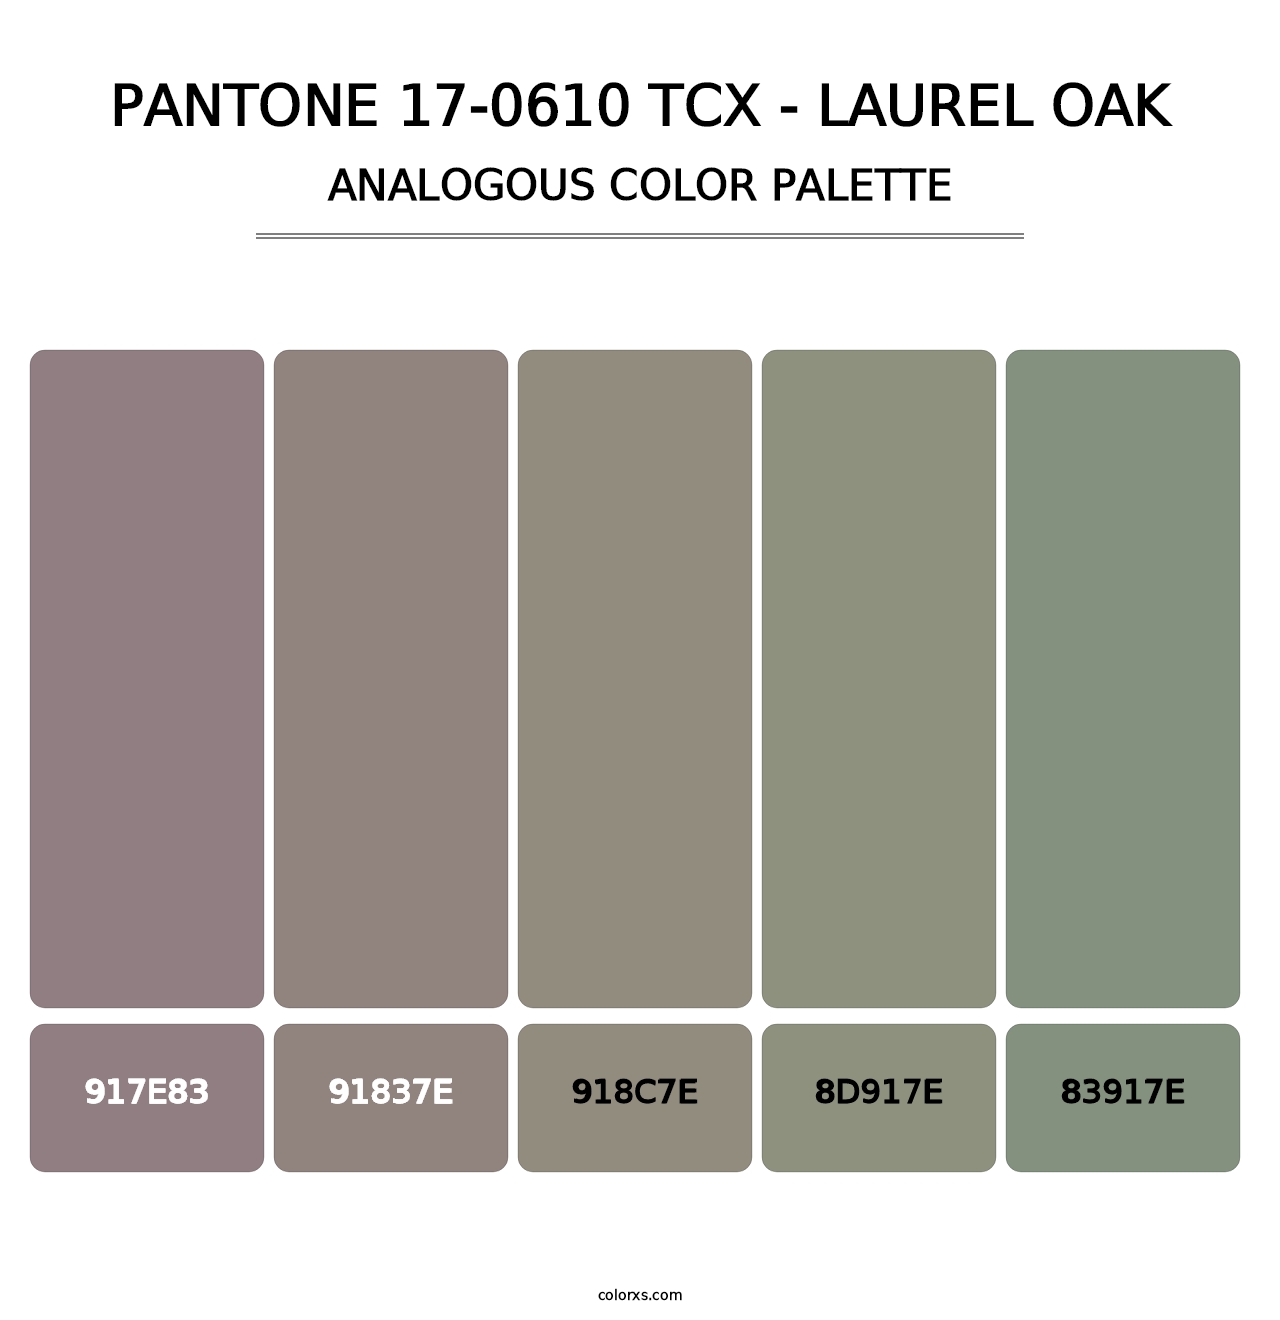 PANTONE 17-0610 TCX - Laurel Oak - Analogous Color Palette